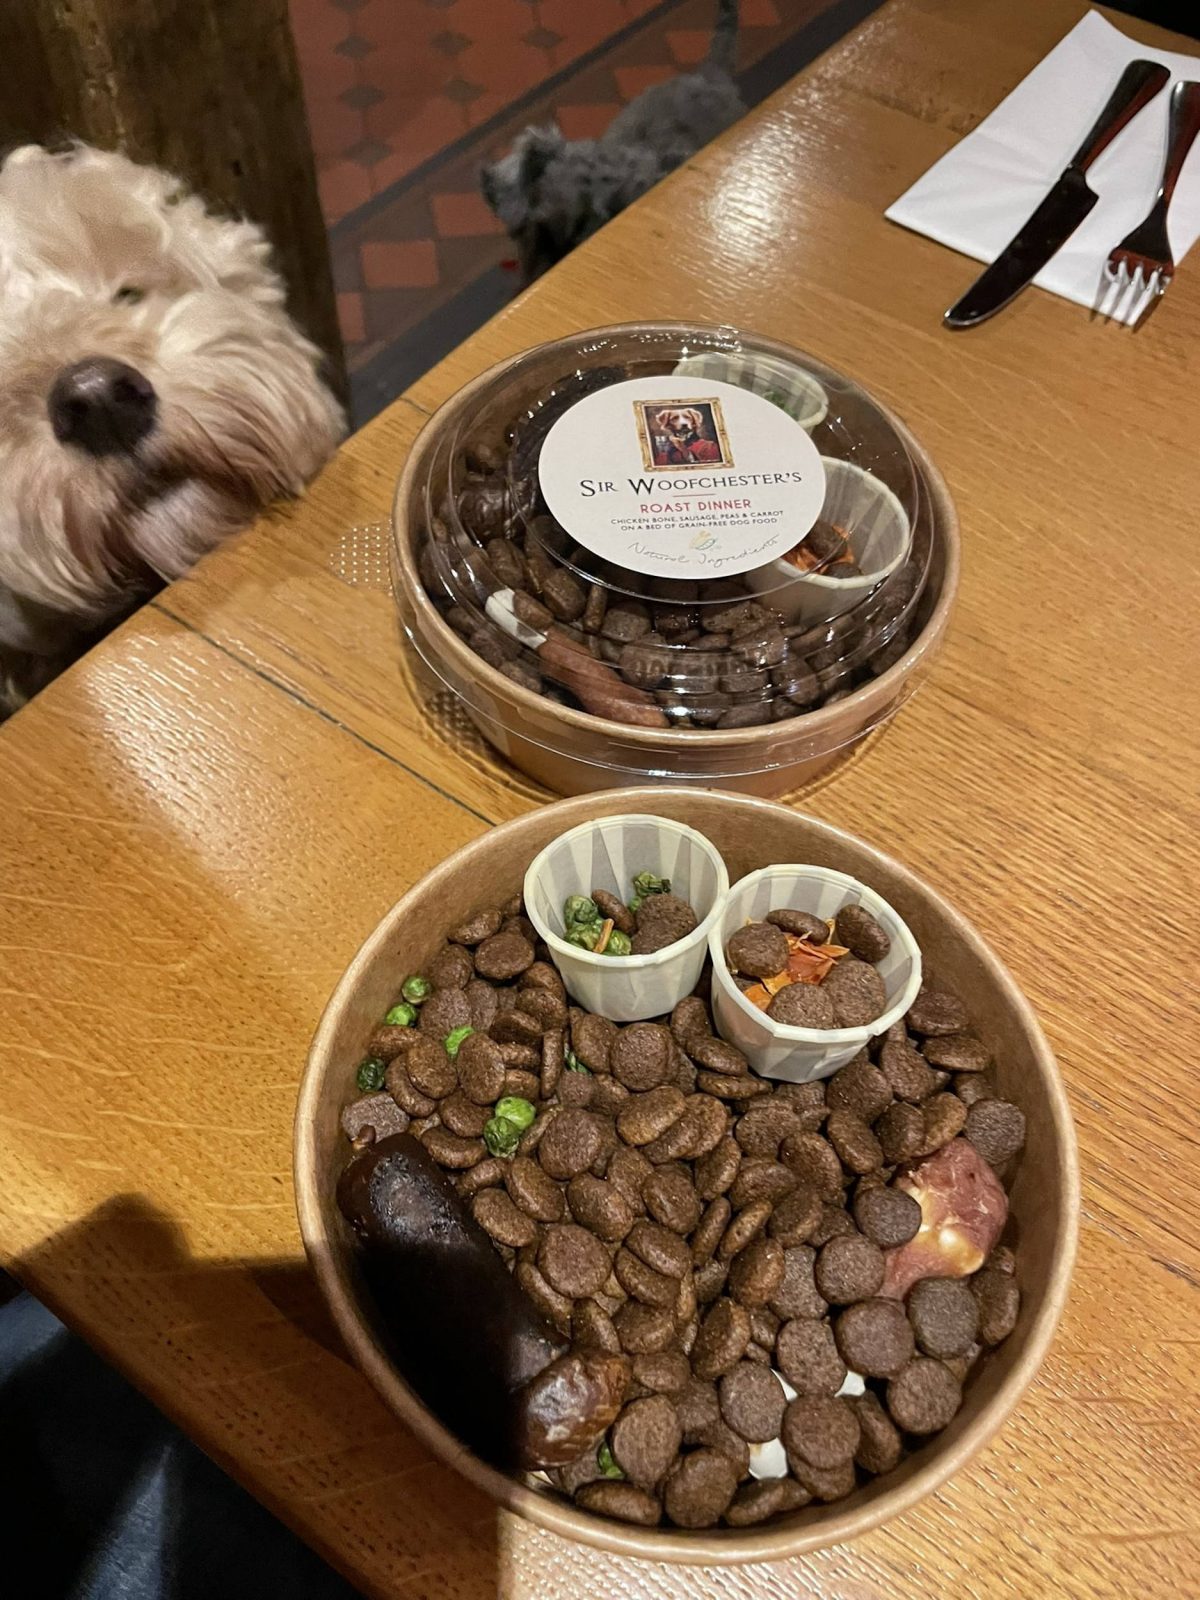 The Fishpool Inn's dog meal